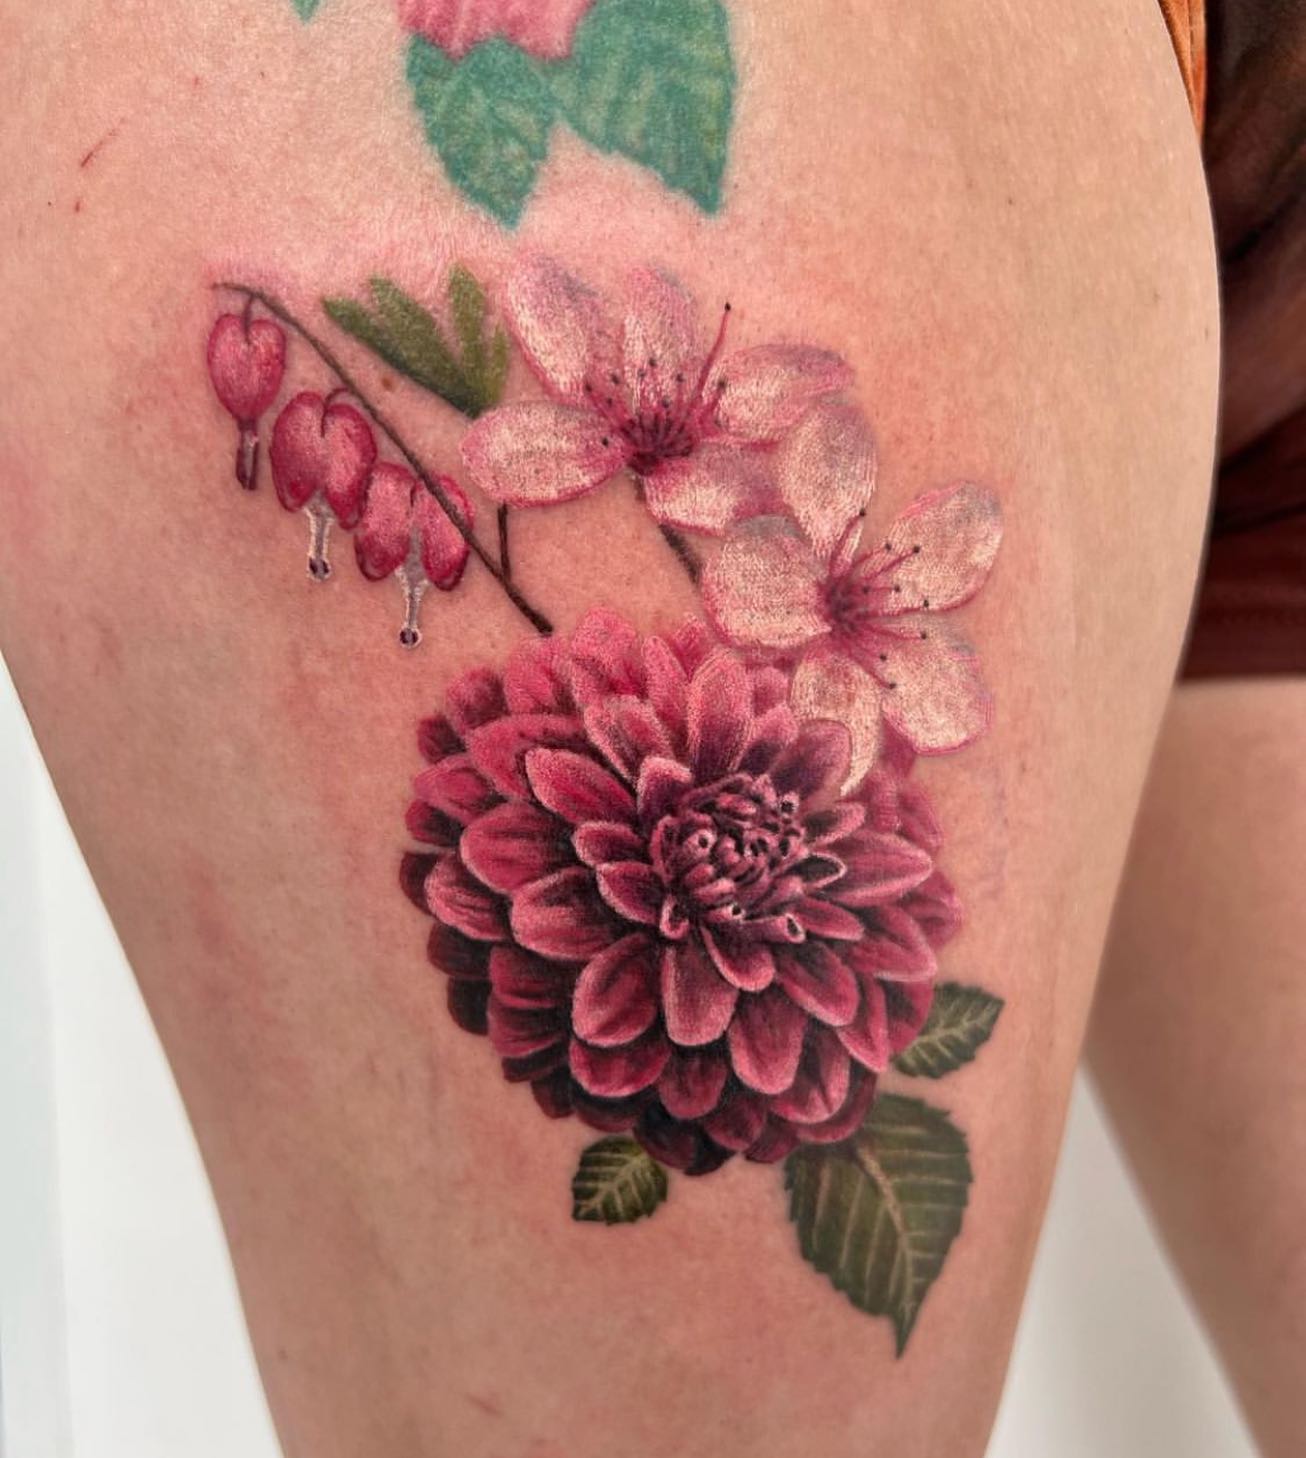 Tatuaje de flor vibrante en el muslo.